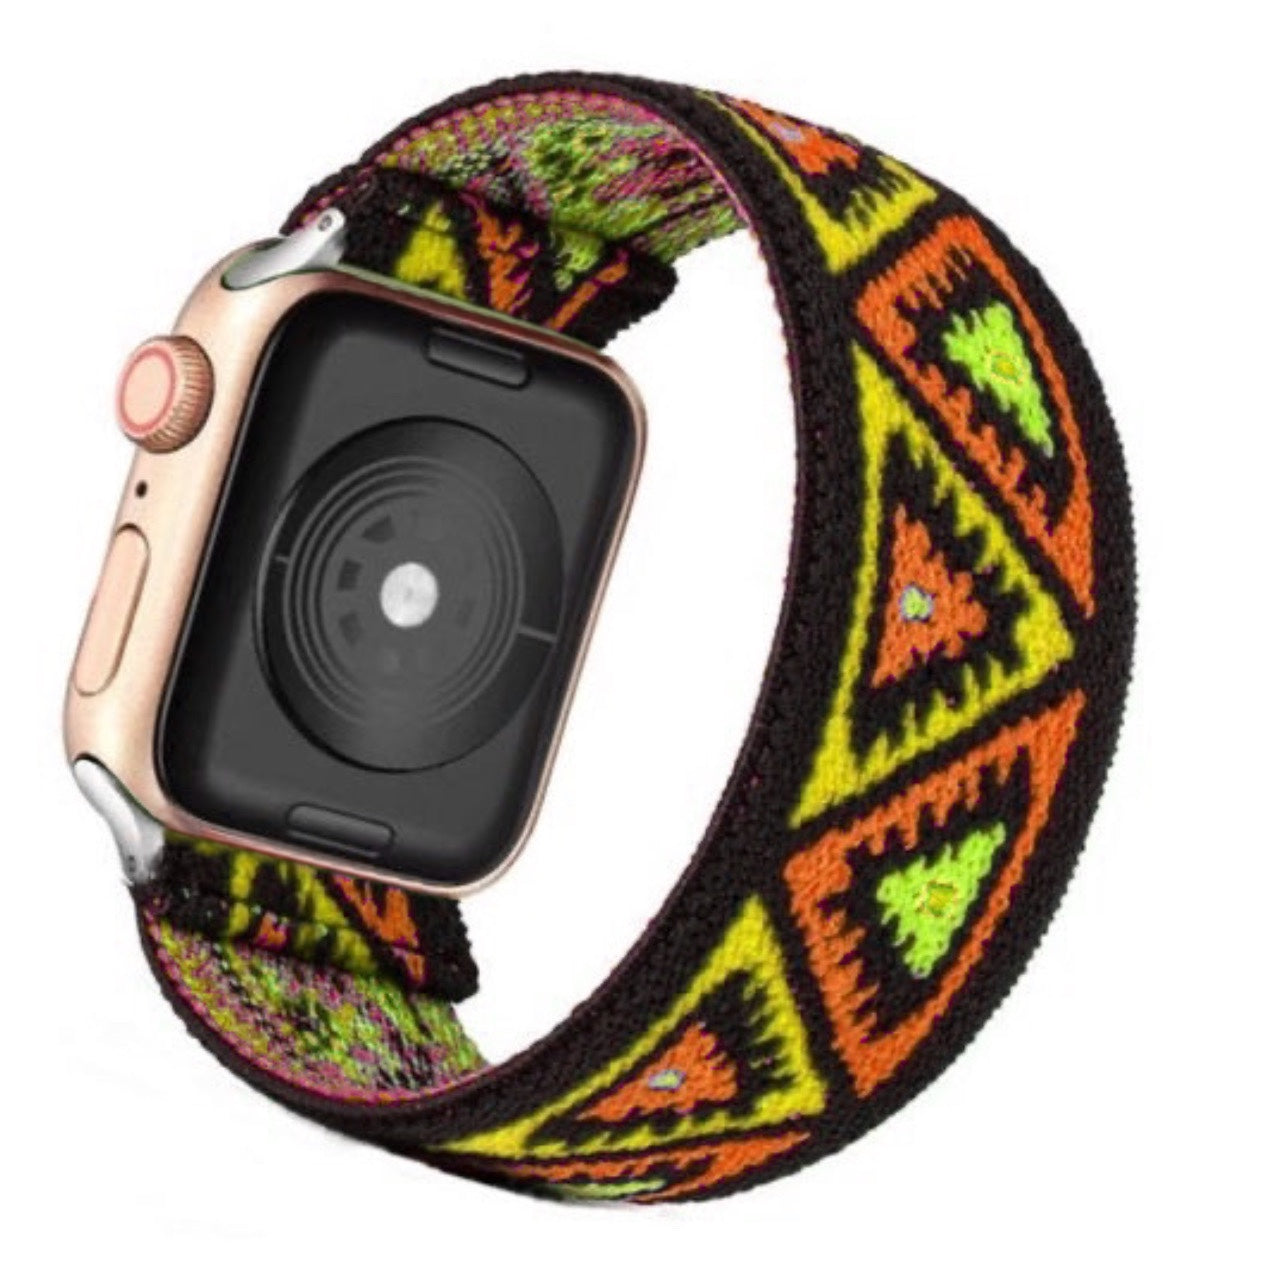 Cinturino Apple Watch in nylon elastico giallo e nero